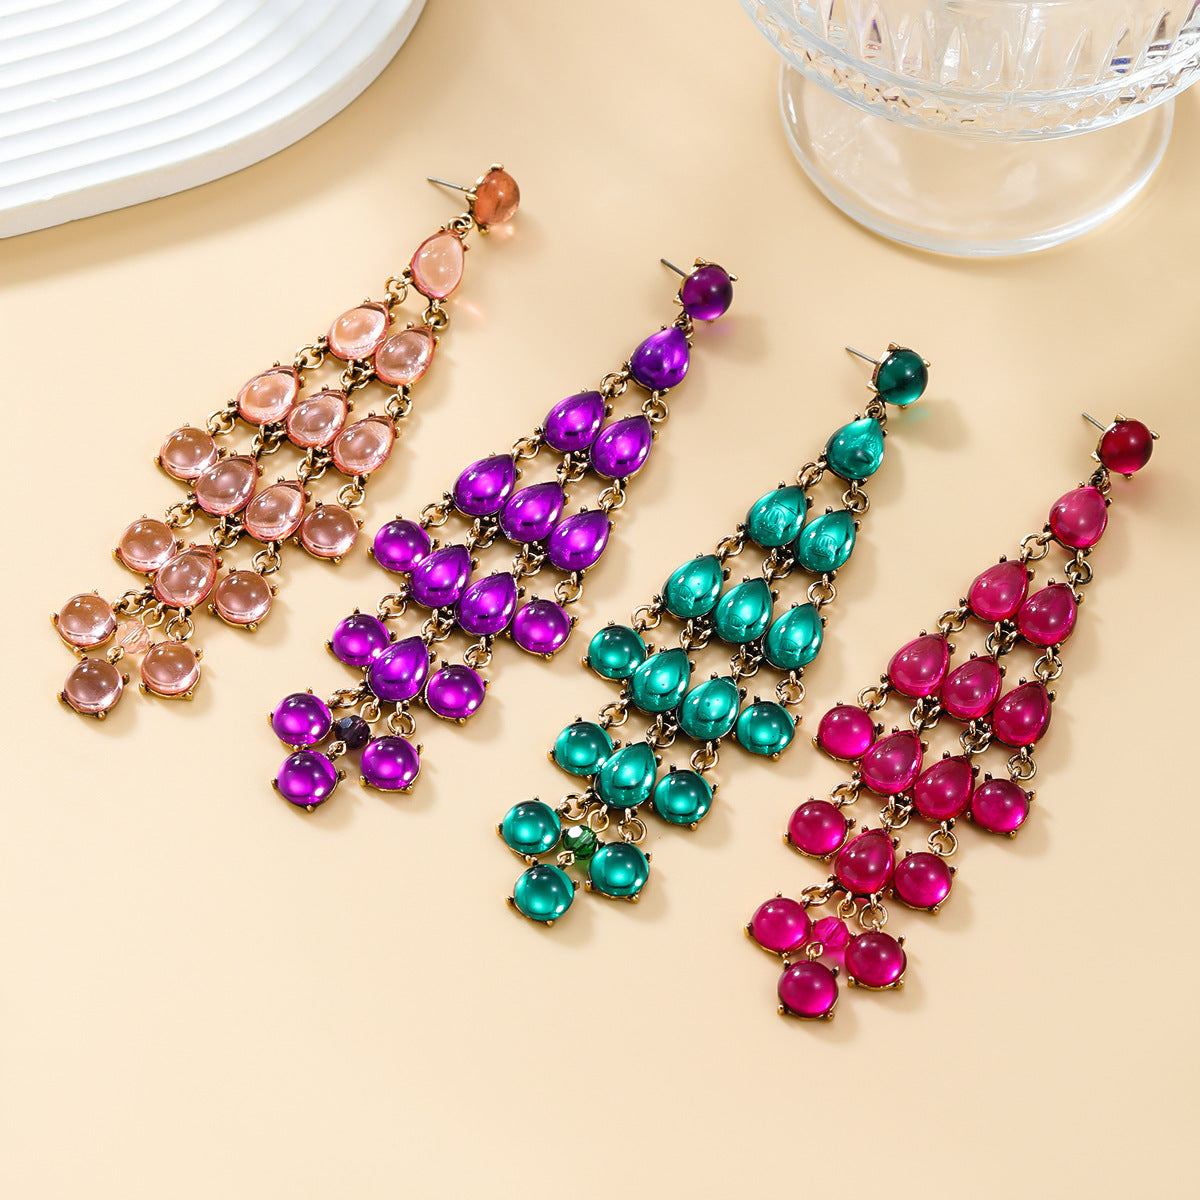 Women's Fashion Tassel Drop-shaped Resin Bohemian Ornament Earrings